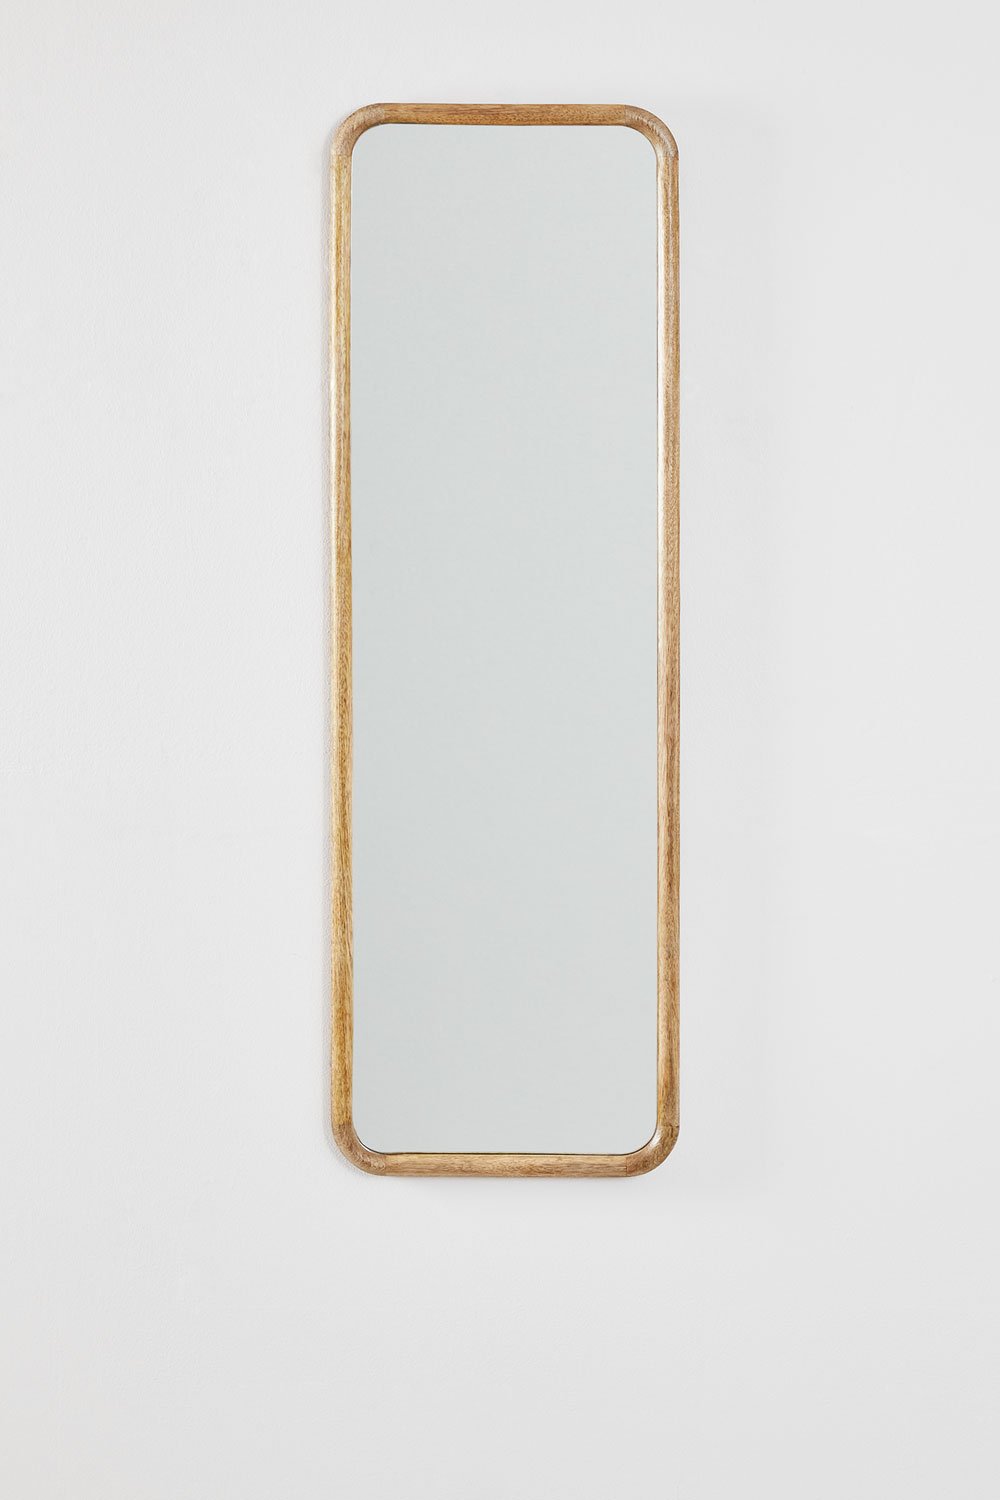 Espelho de Parede Retangular em Madeira de Manga (36,5x115 cm) Mirtzia , imagem de galeria 1